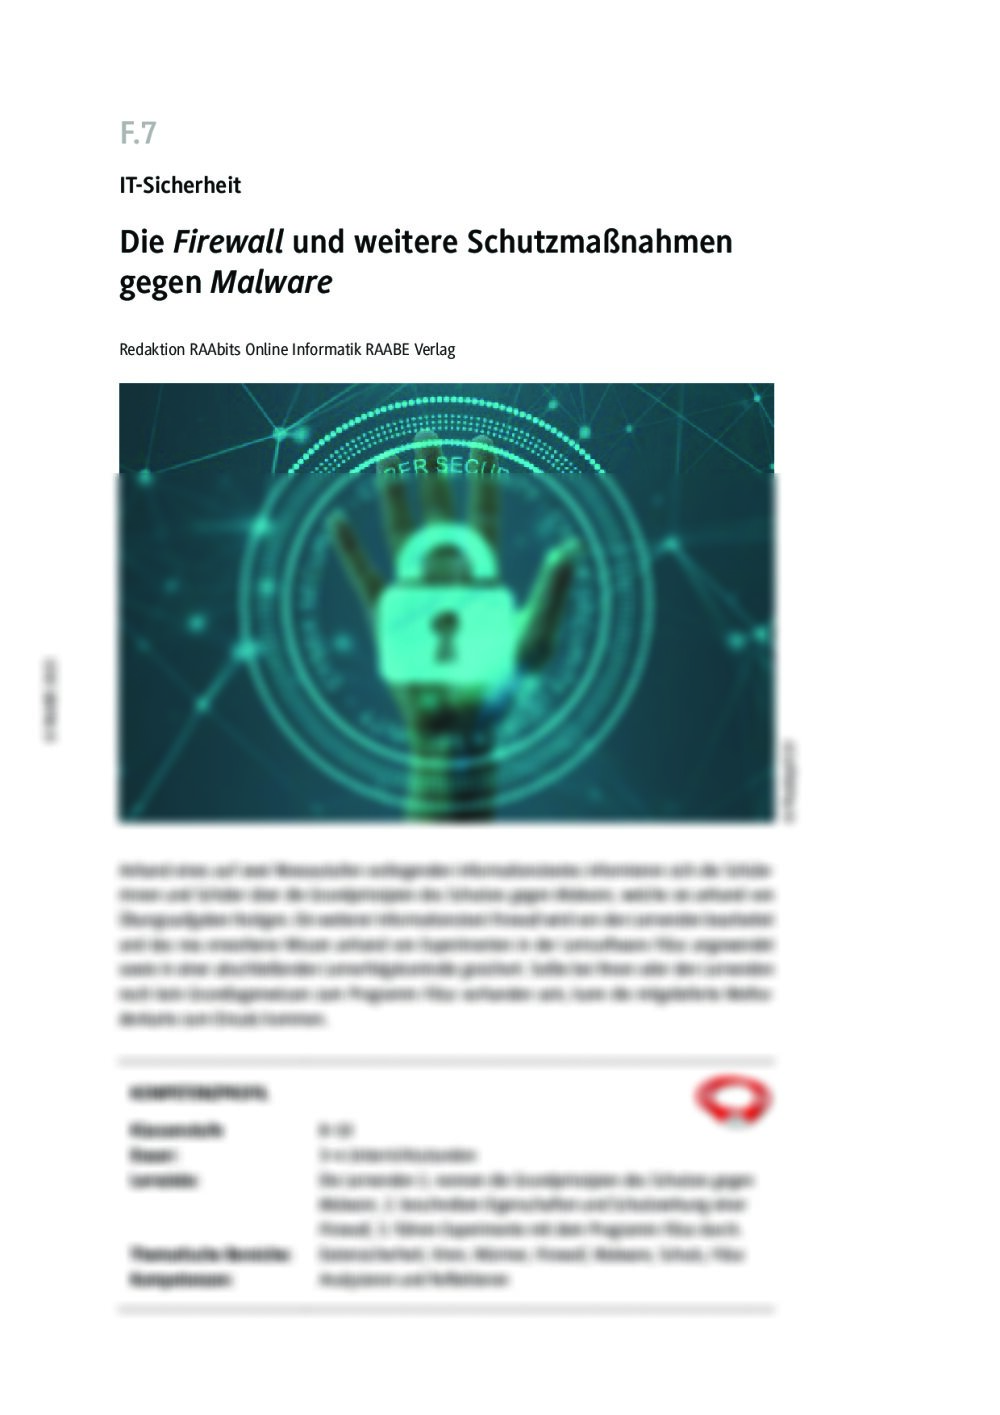 Die Firewall und weitere Schutzmaßnahmen gegen Malware - Seite 1